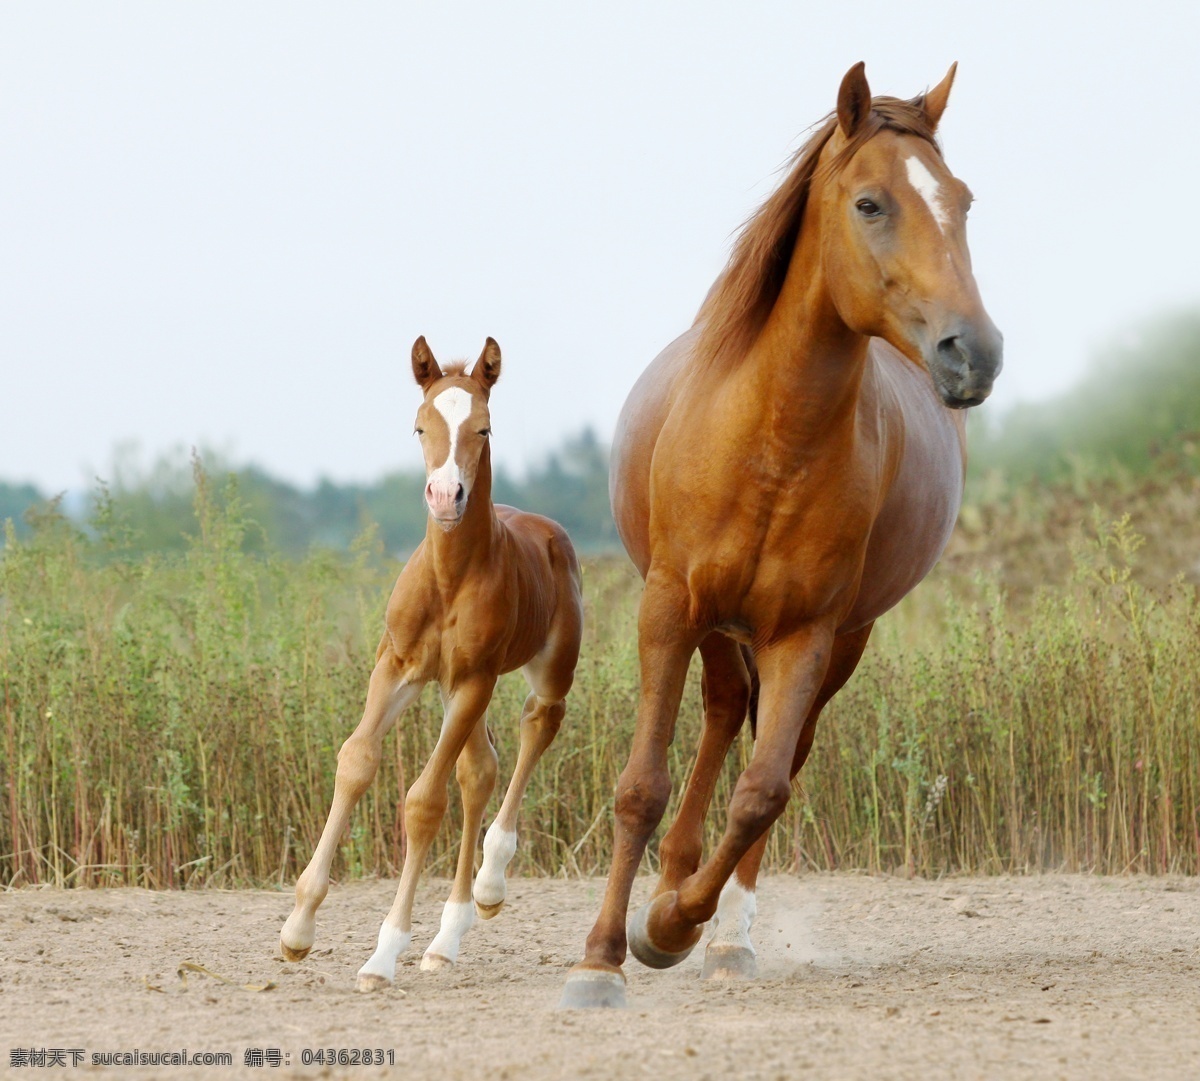 前后 奔跑 马匹 马驹 前后奔跑 动物 草丛 陆地动物 生物世界